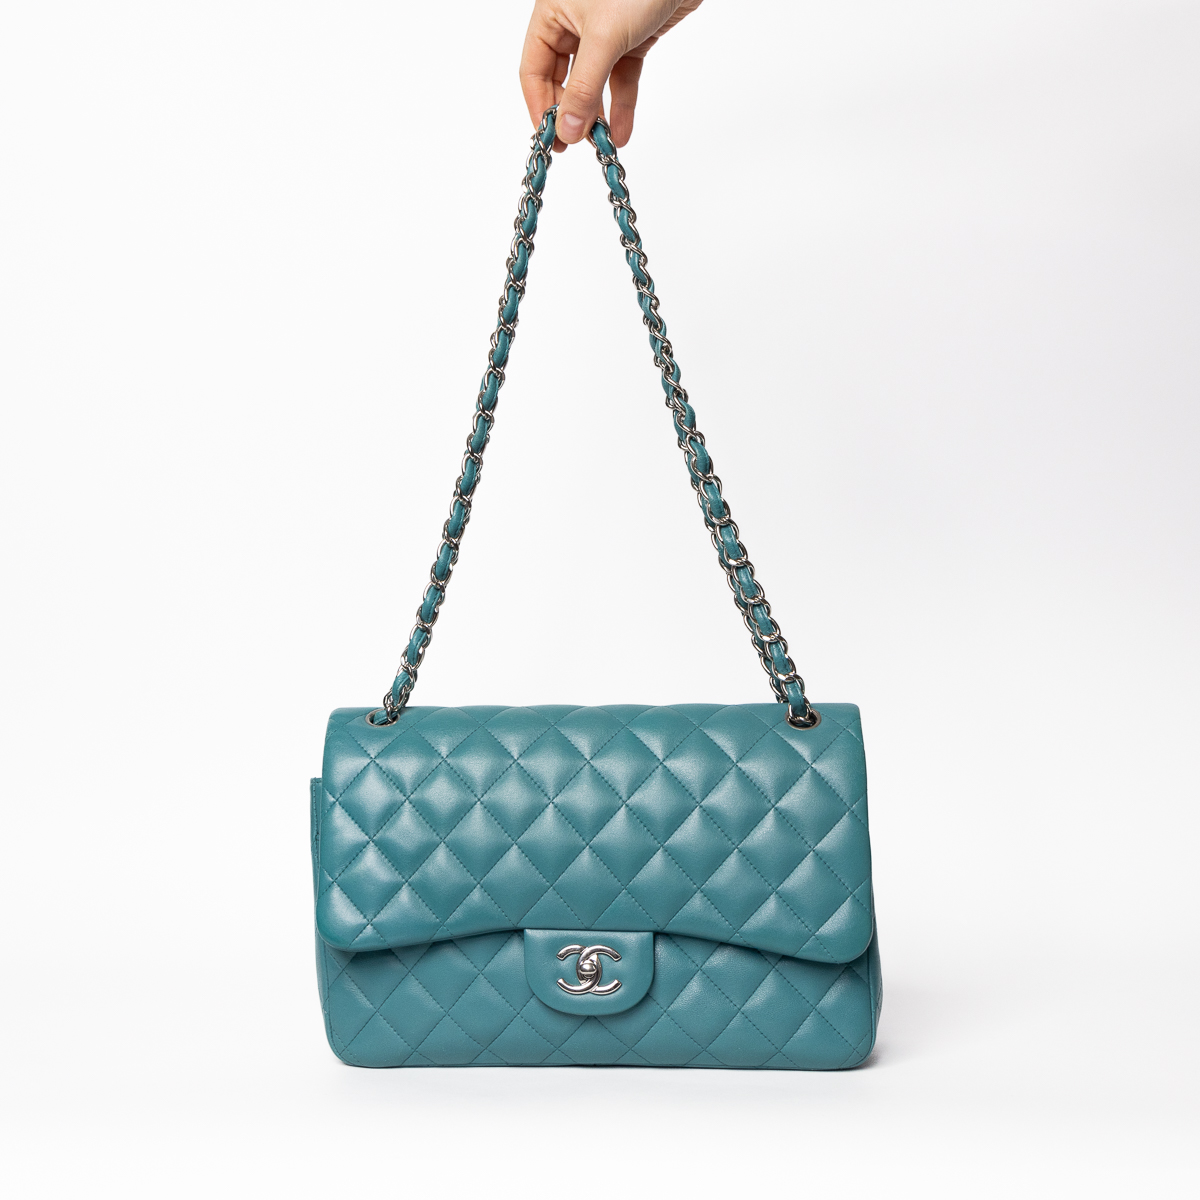 Chanel Timeless Double Flap Jumbo Lambskin turquoise avec du matériel d'argent